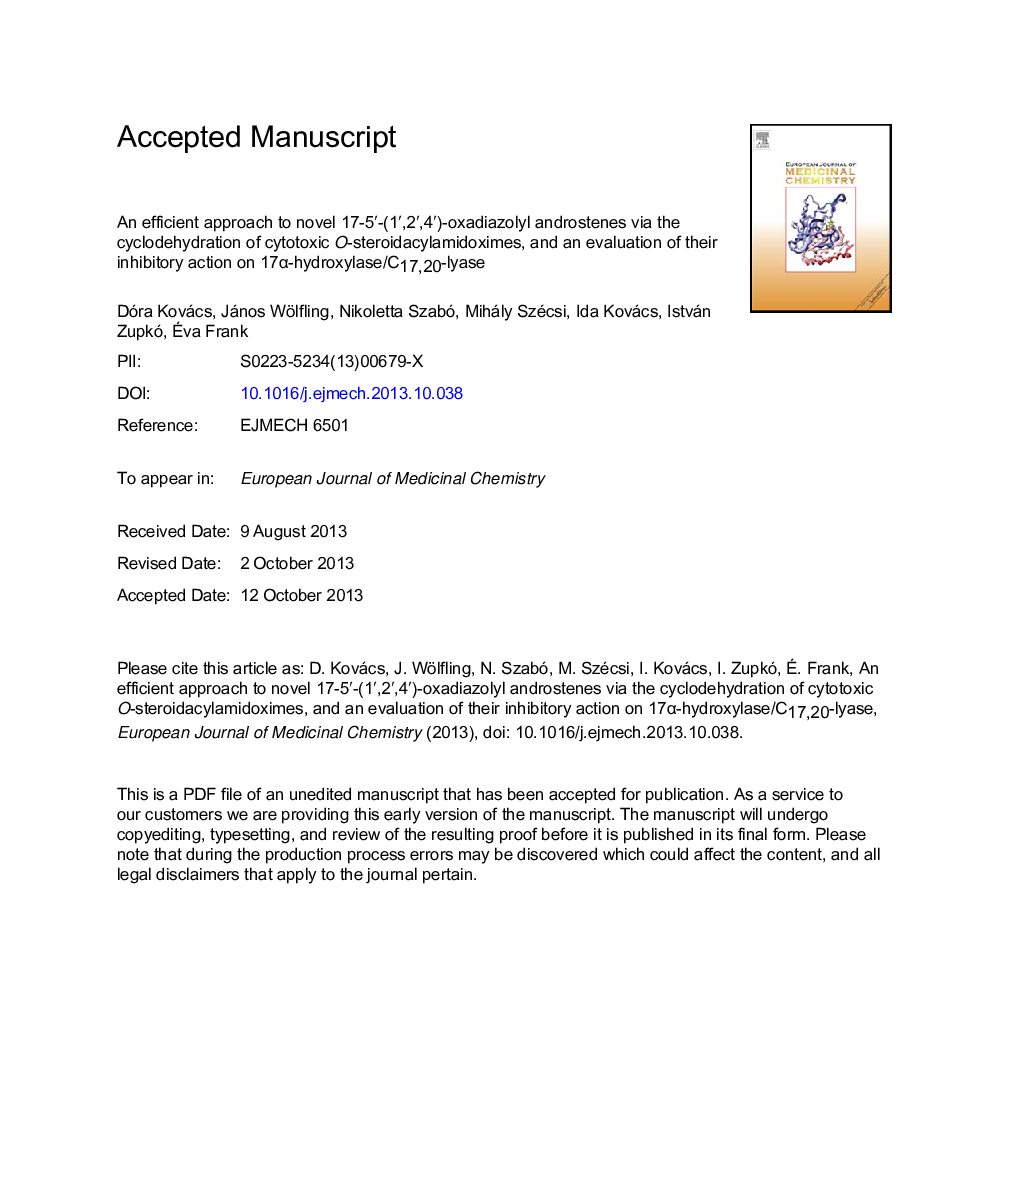 An efficient approach to novel 17-5â²-(1â²,2â²,4â²)-oxadiazolyl androstenes via the cyclodehydration of cytotoxic O-steroidacylamidoximes, andÂ an evaluation of their inhibitory action on 17Î±-hydroxylase/C17,20-lyase